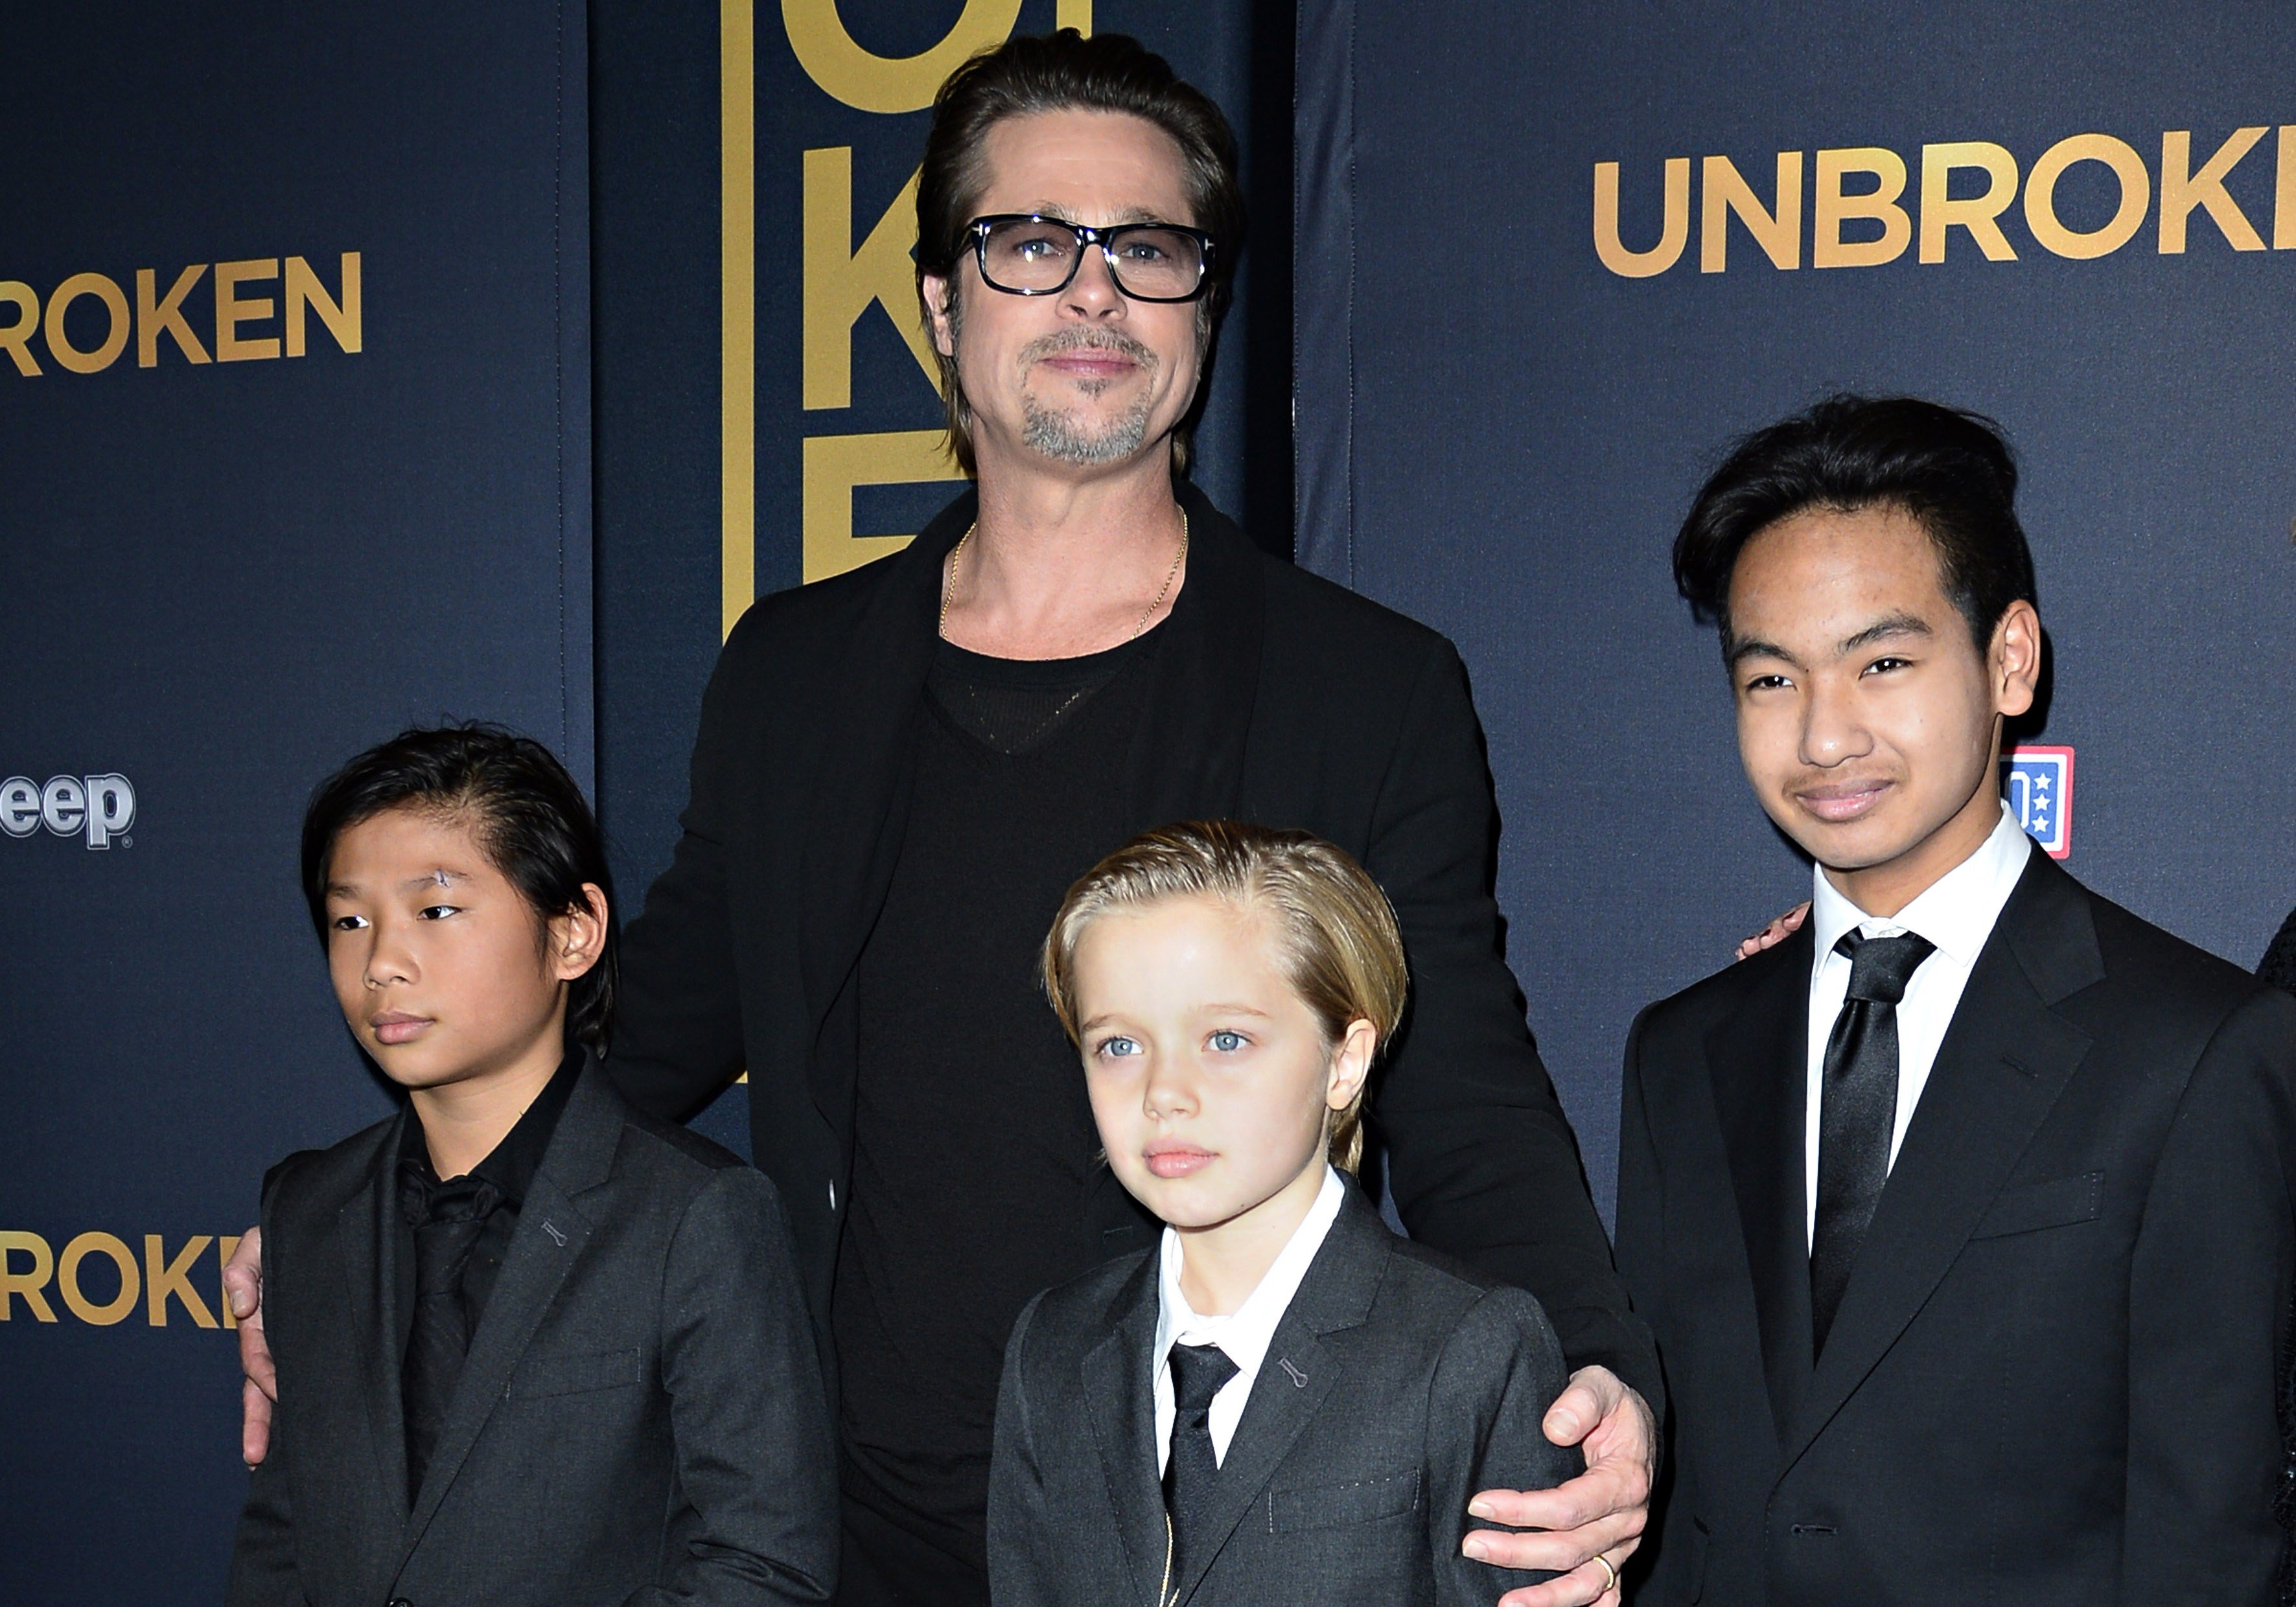 Brad Pitt, Pax, Shiloh und Maddox Jolie-Pitt bei der US-Premiere von "Unbroken" am 15. Dezember 2014 in Hollywood, Kalifornien | Quelle: Getty Images